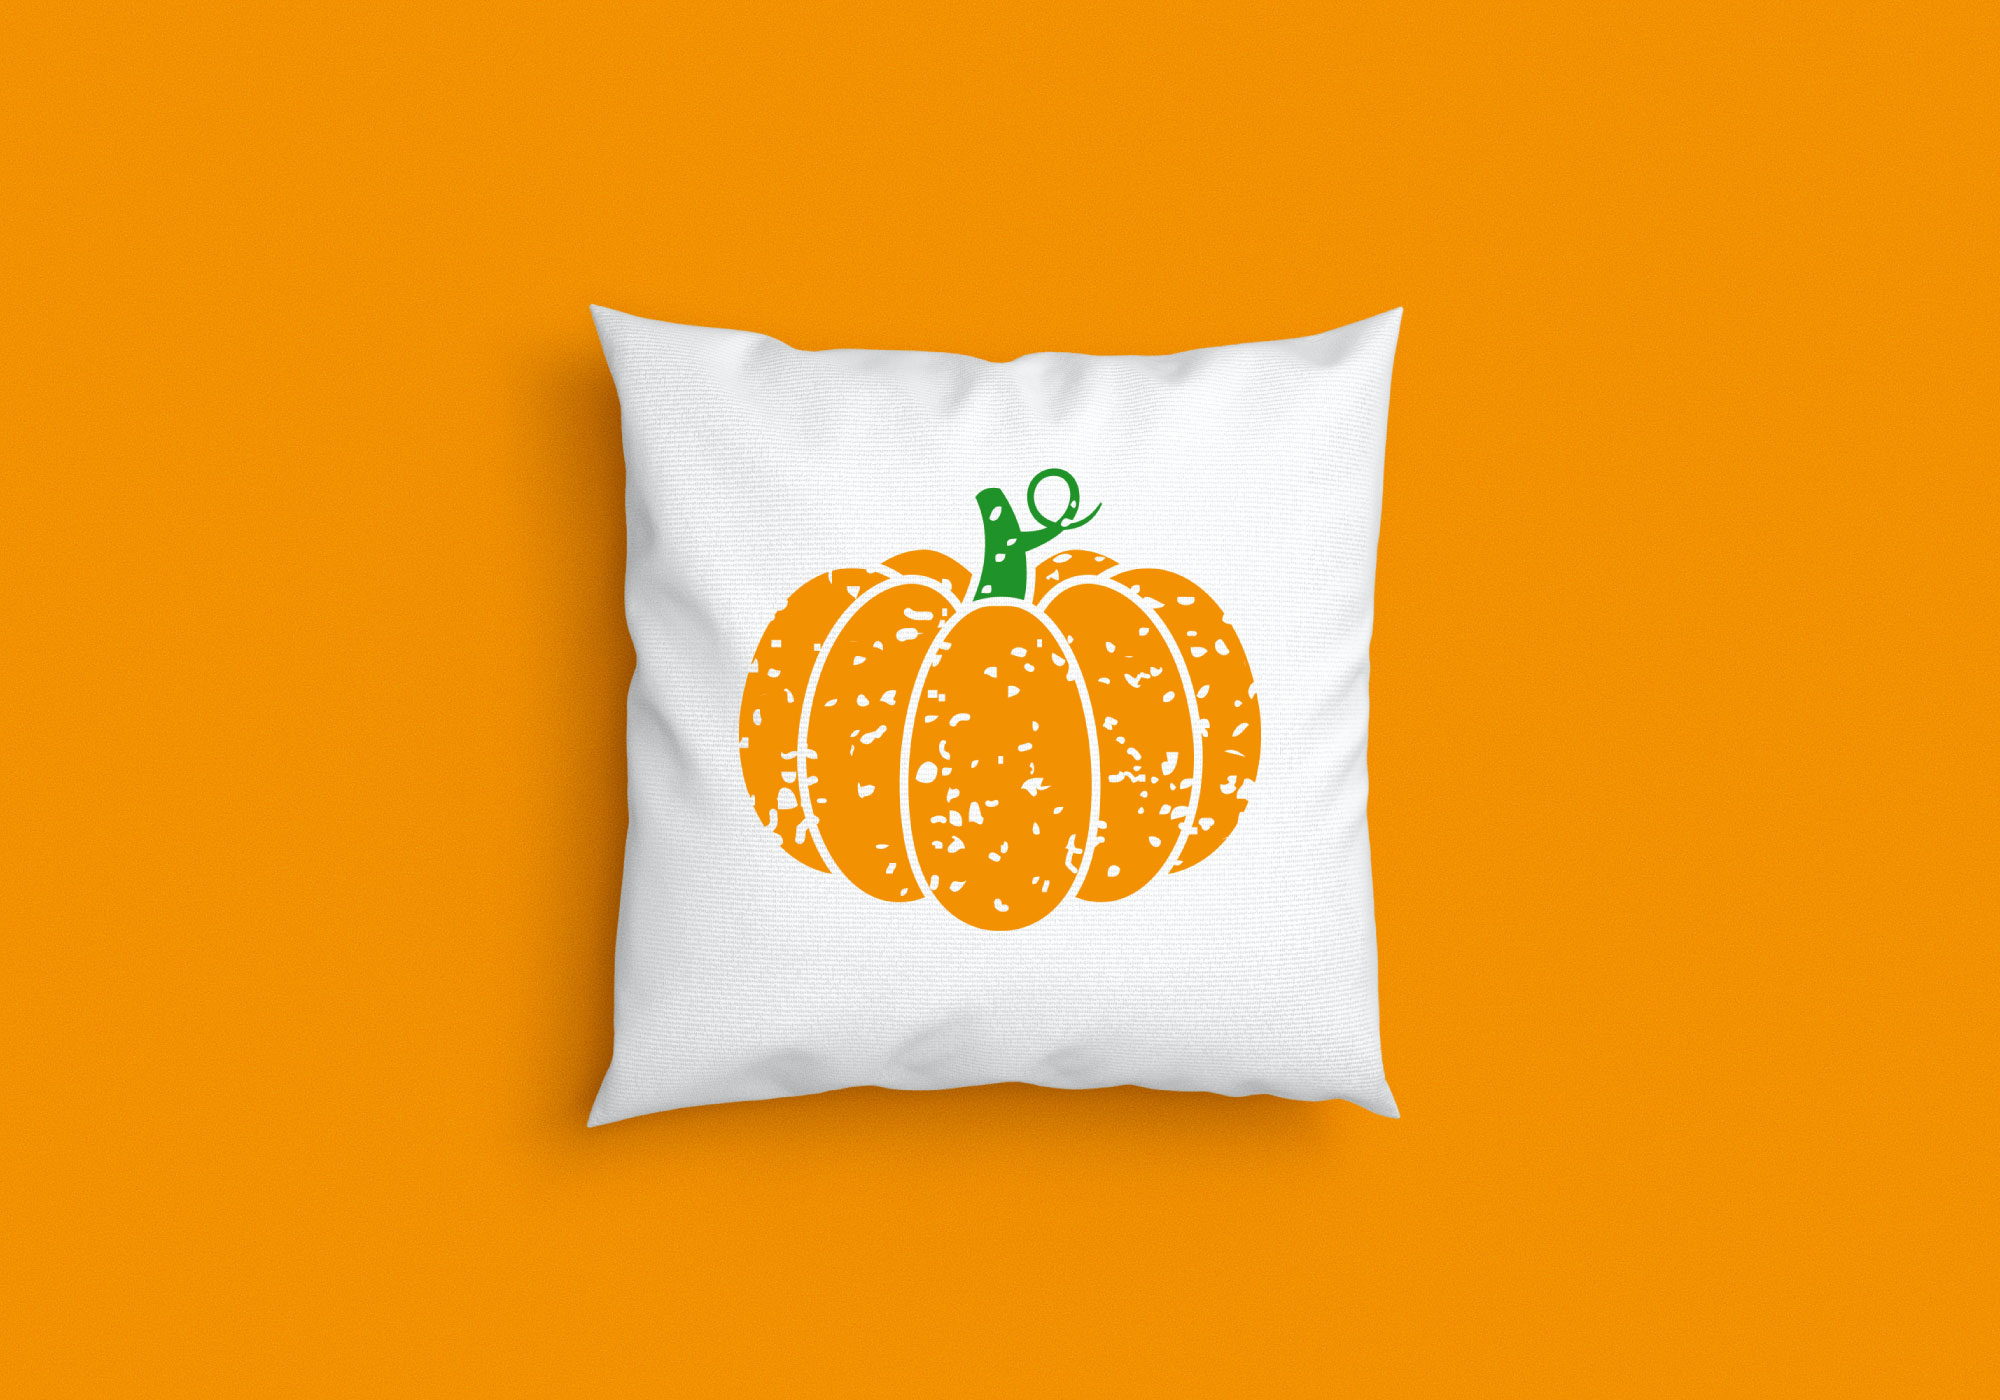 Free Distressed Pumpkin SVG Cut File